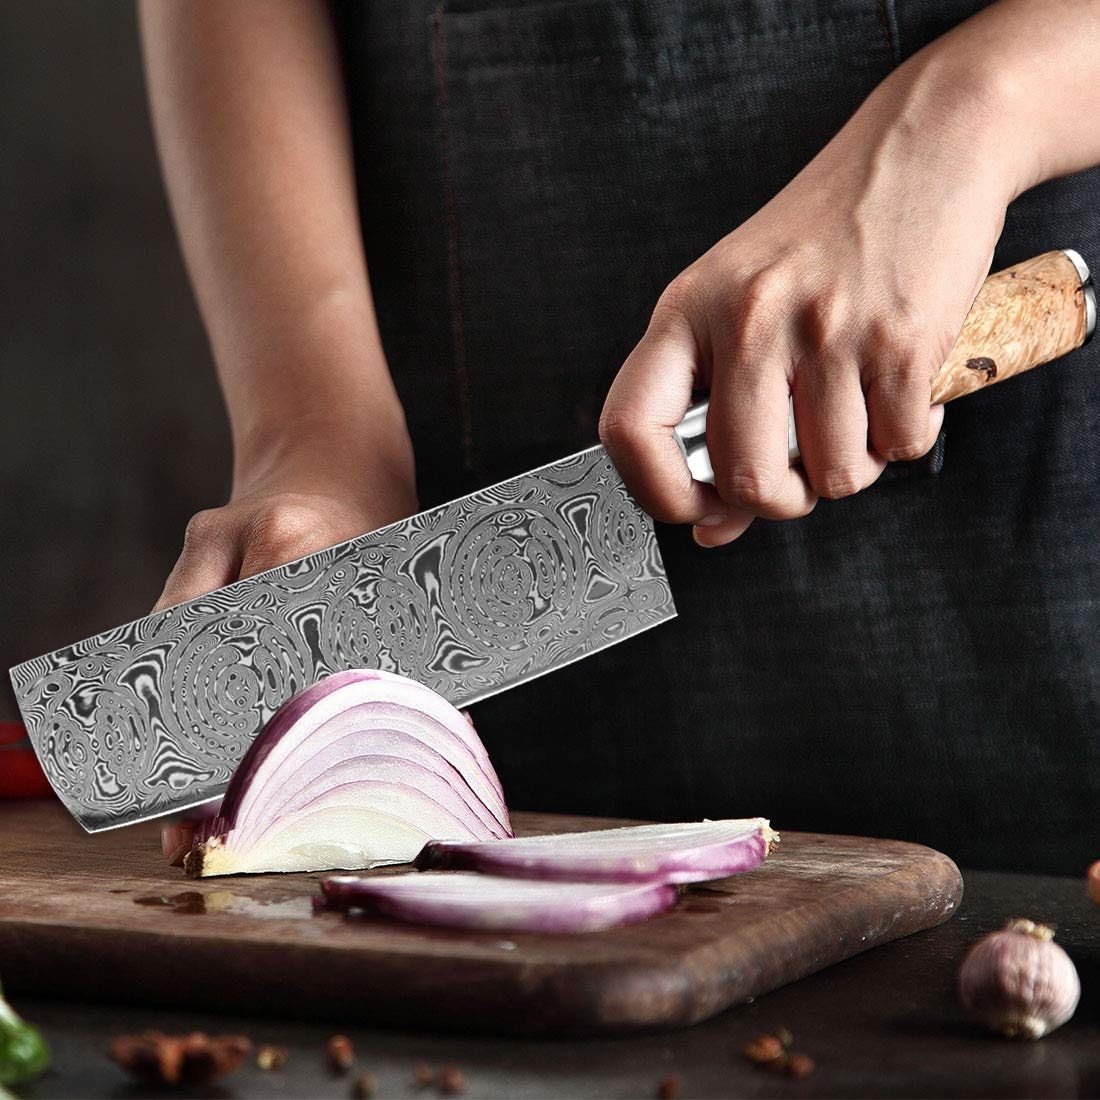 handmade-damascus-steel-cleaver-knife-sharp-chef-knife